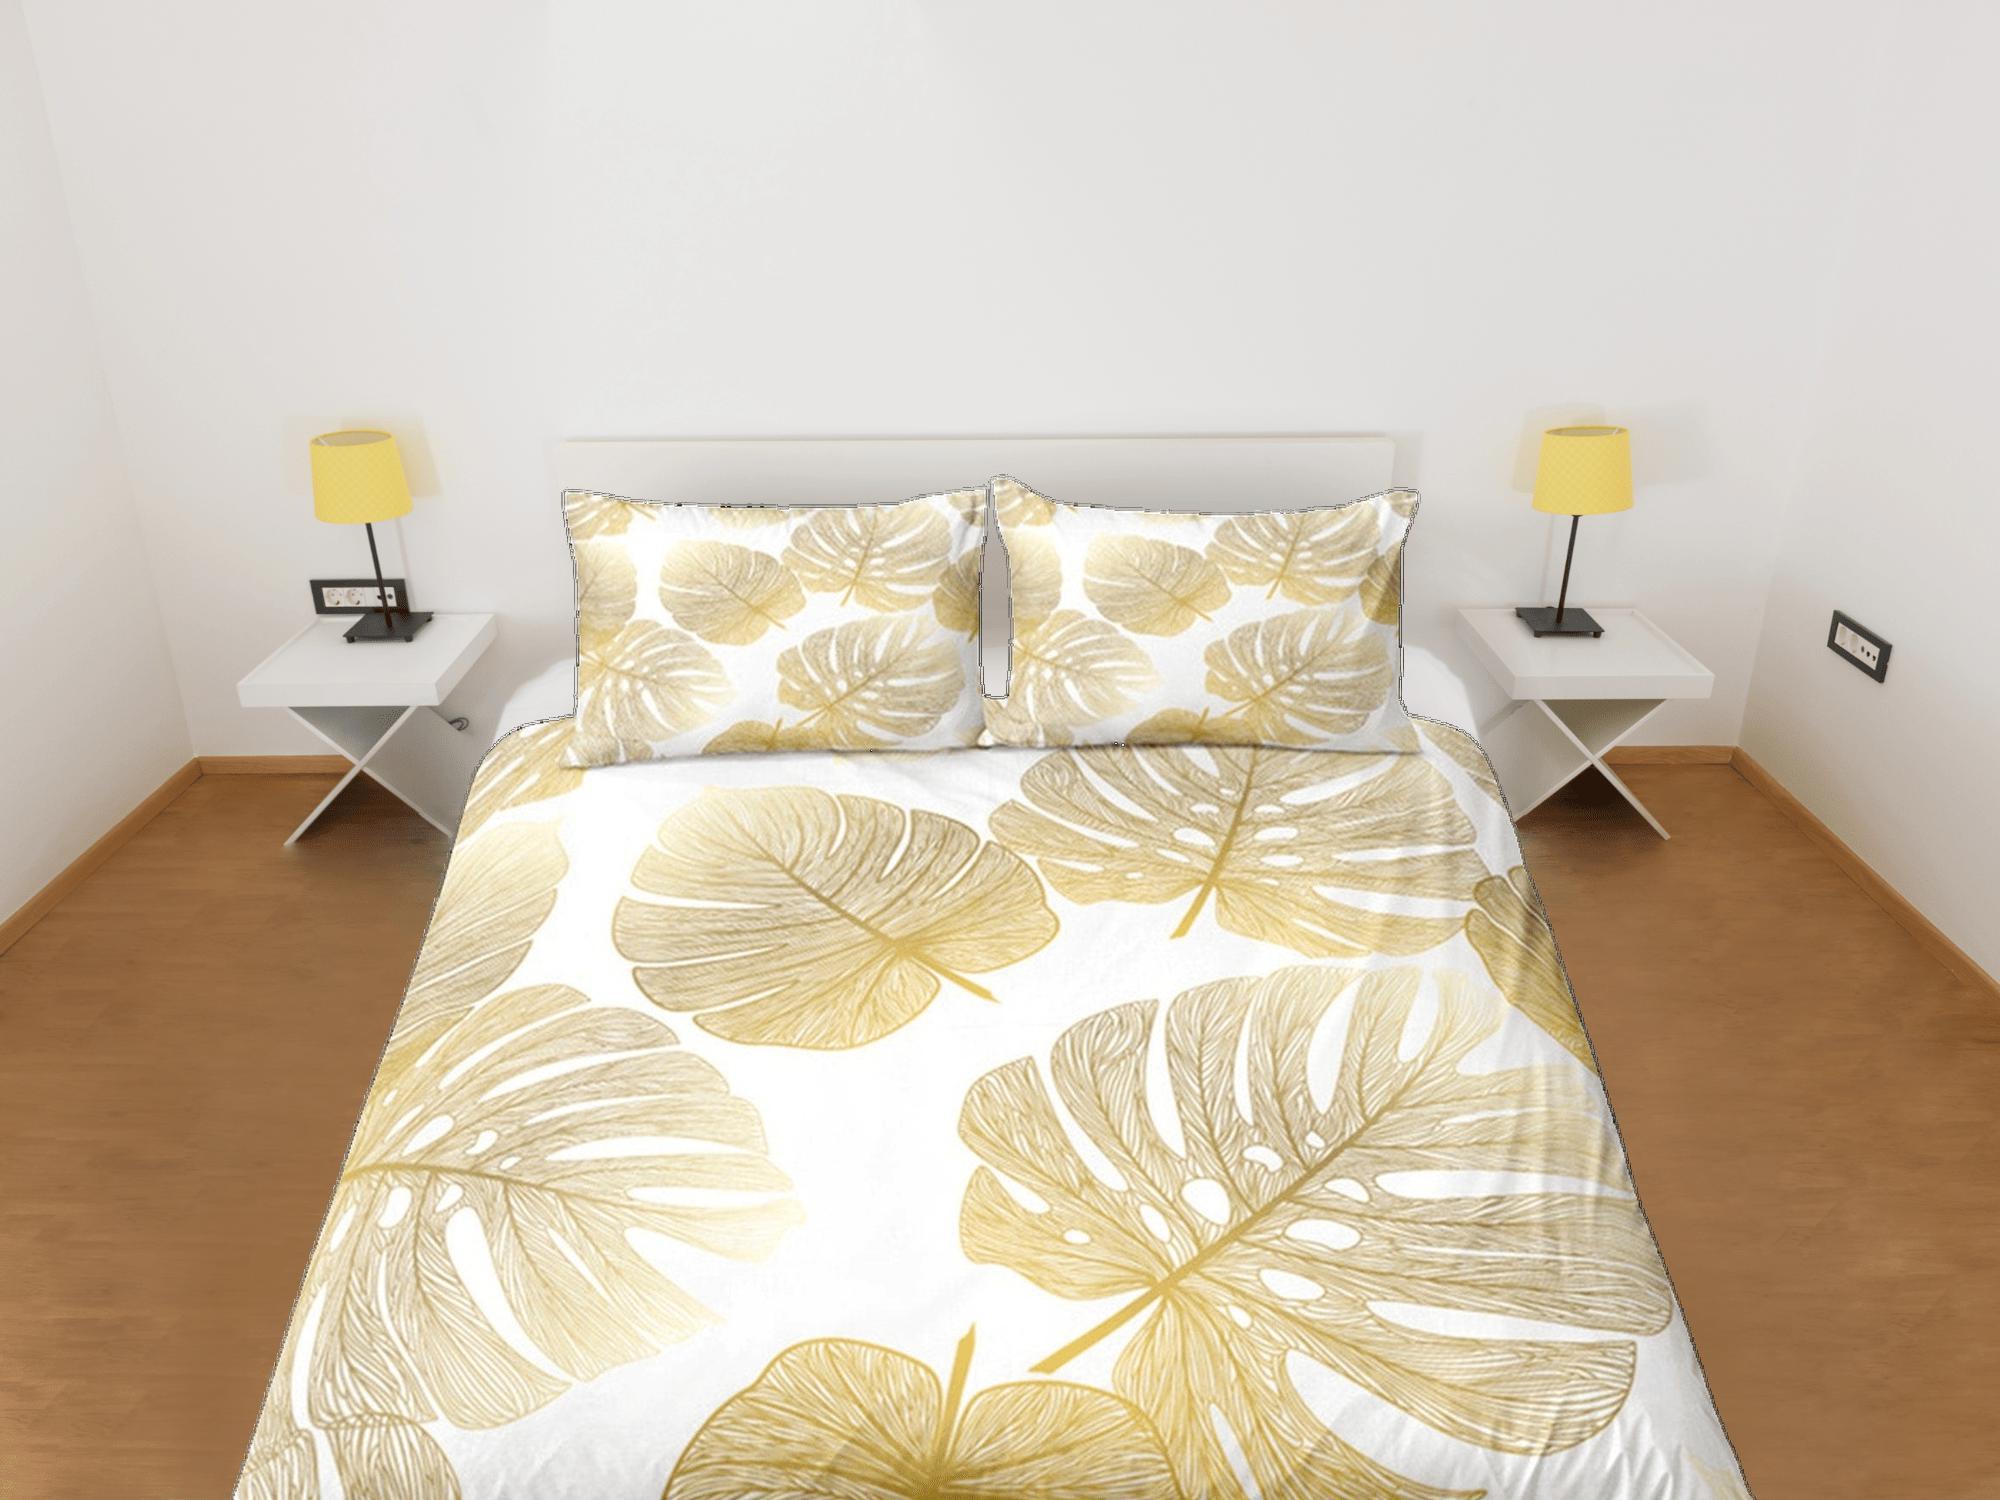 daintyduvet Gold Tropical Duvet Cover Set, Bedspread Dorm Bedding, Summer Bedroom